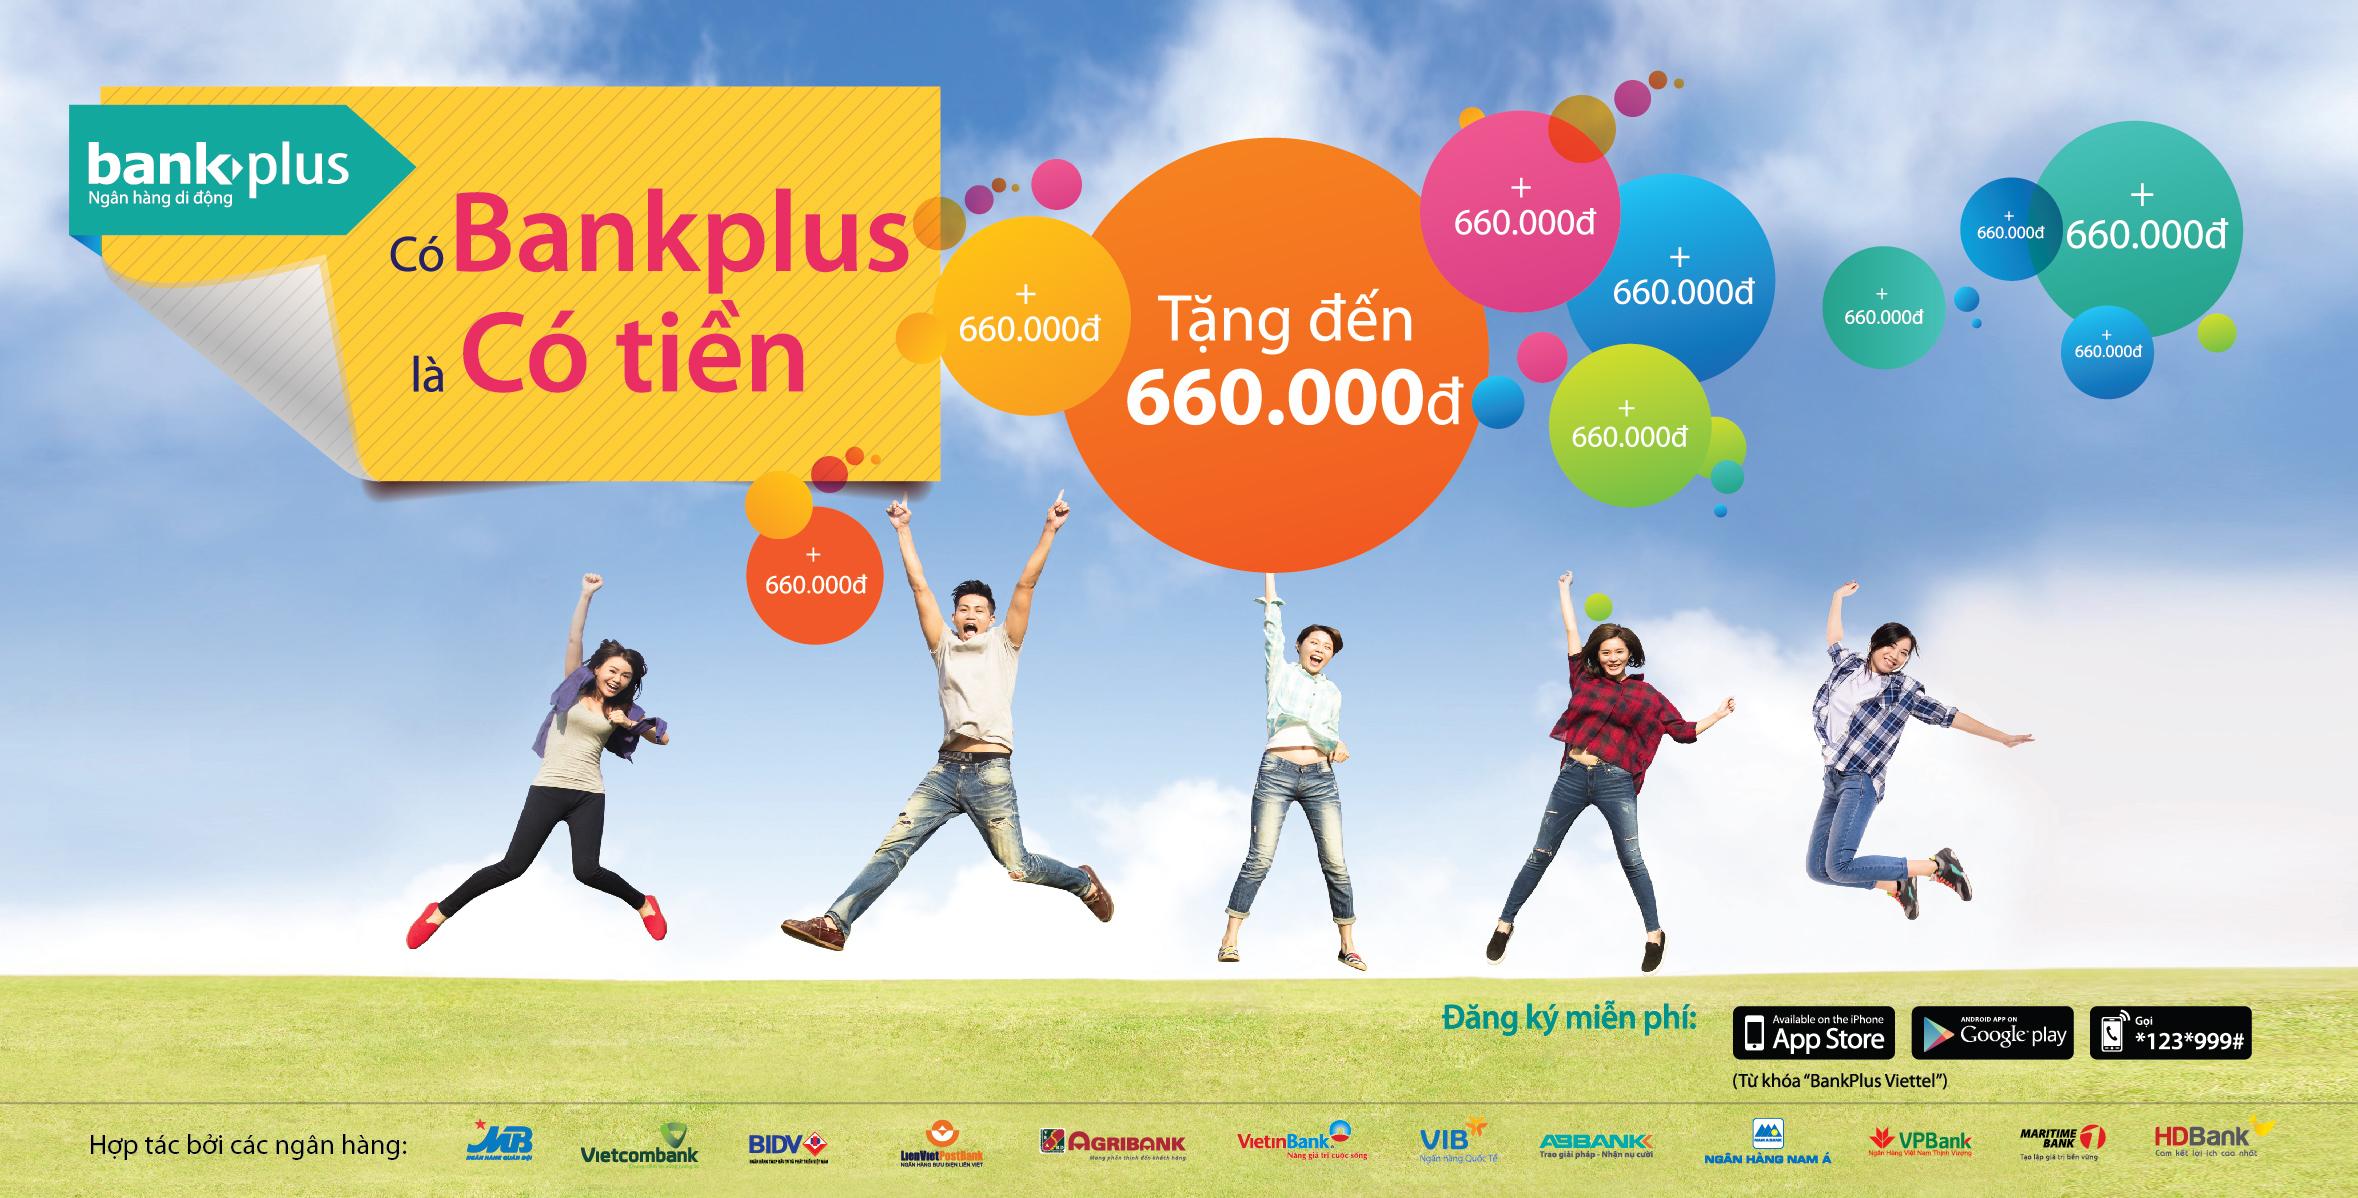 Nhận miễn phí 30k khi đăng ký tài khoản BankPlus của Viettel